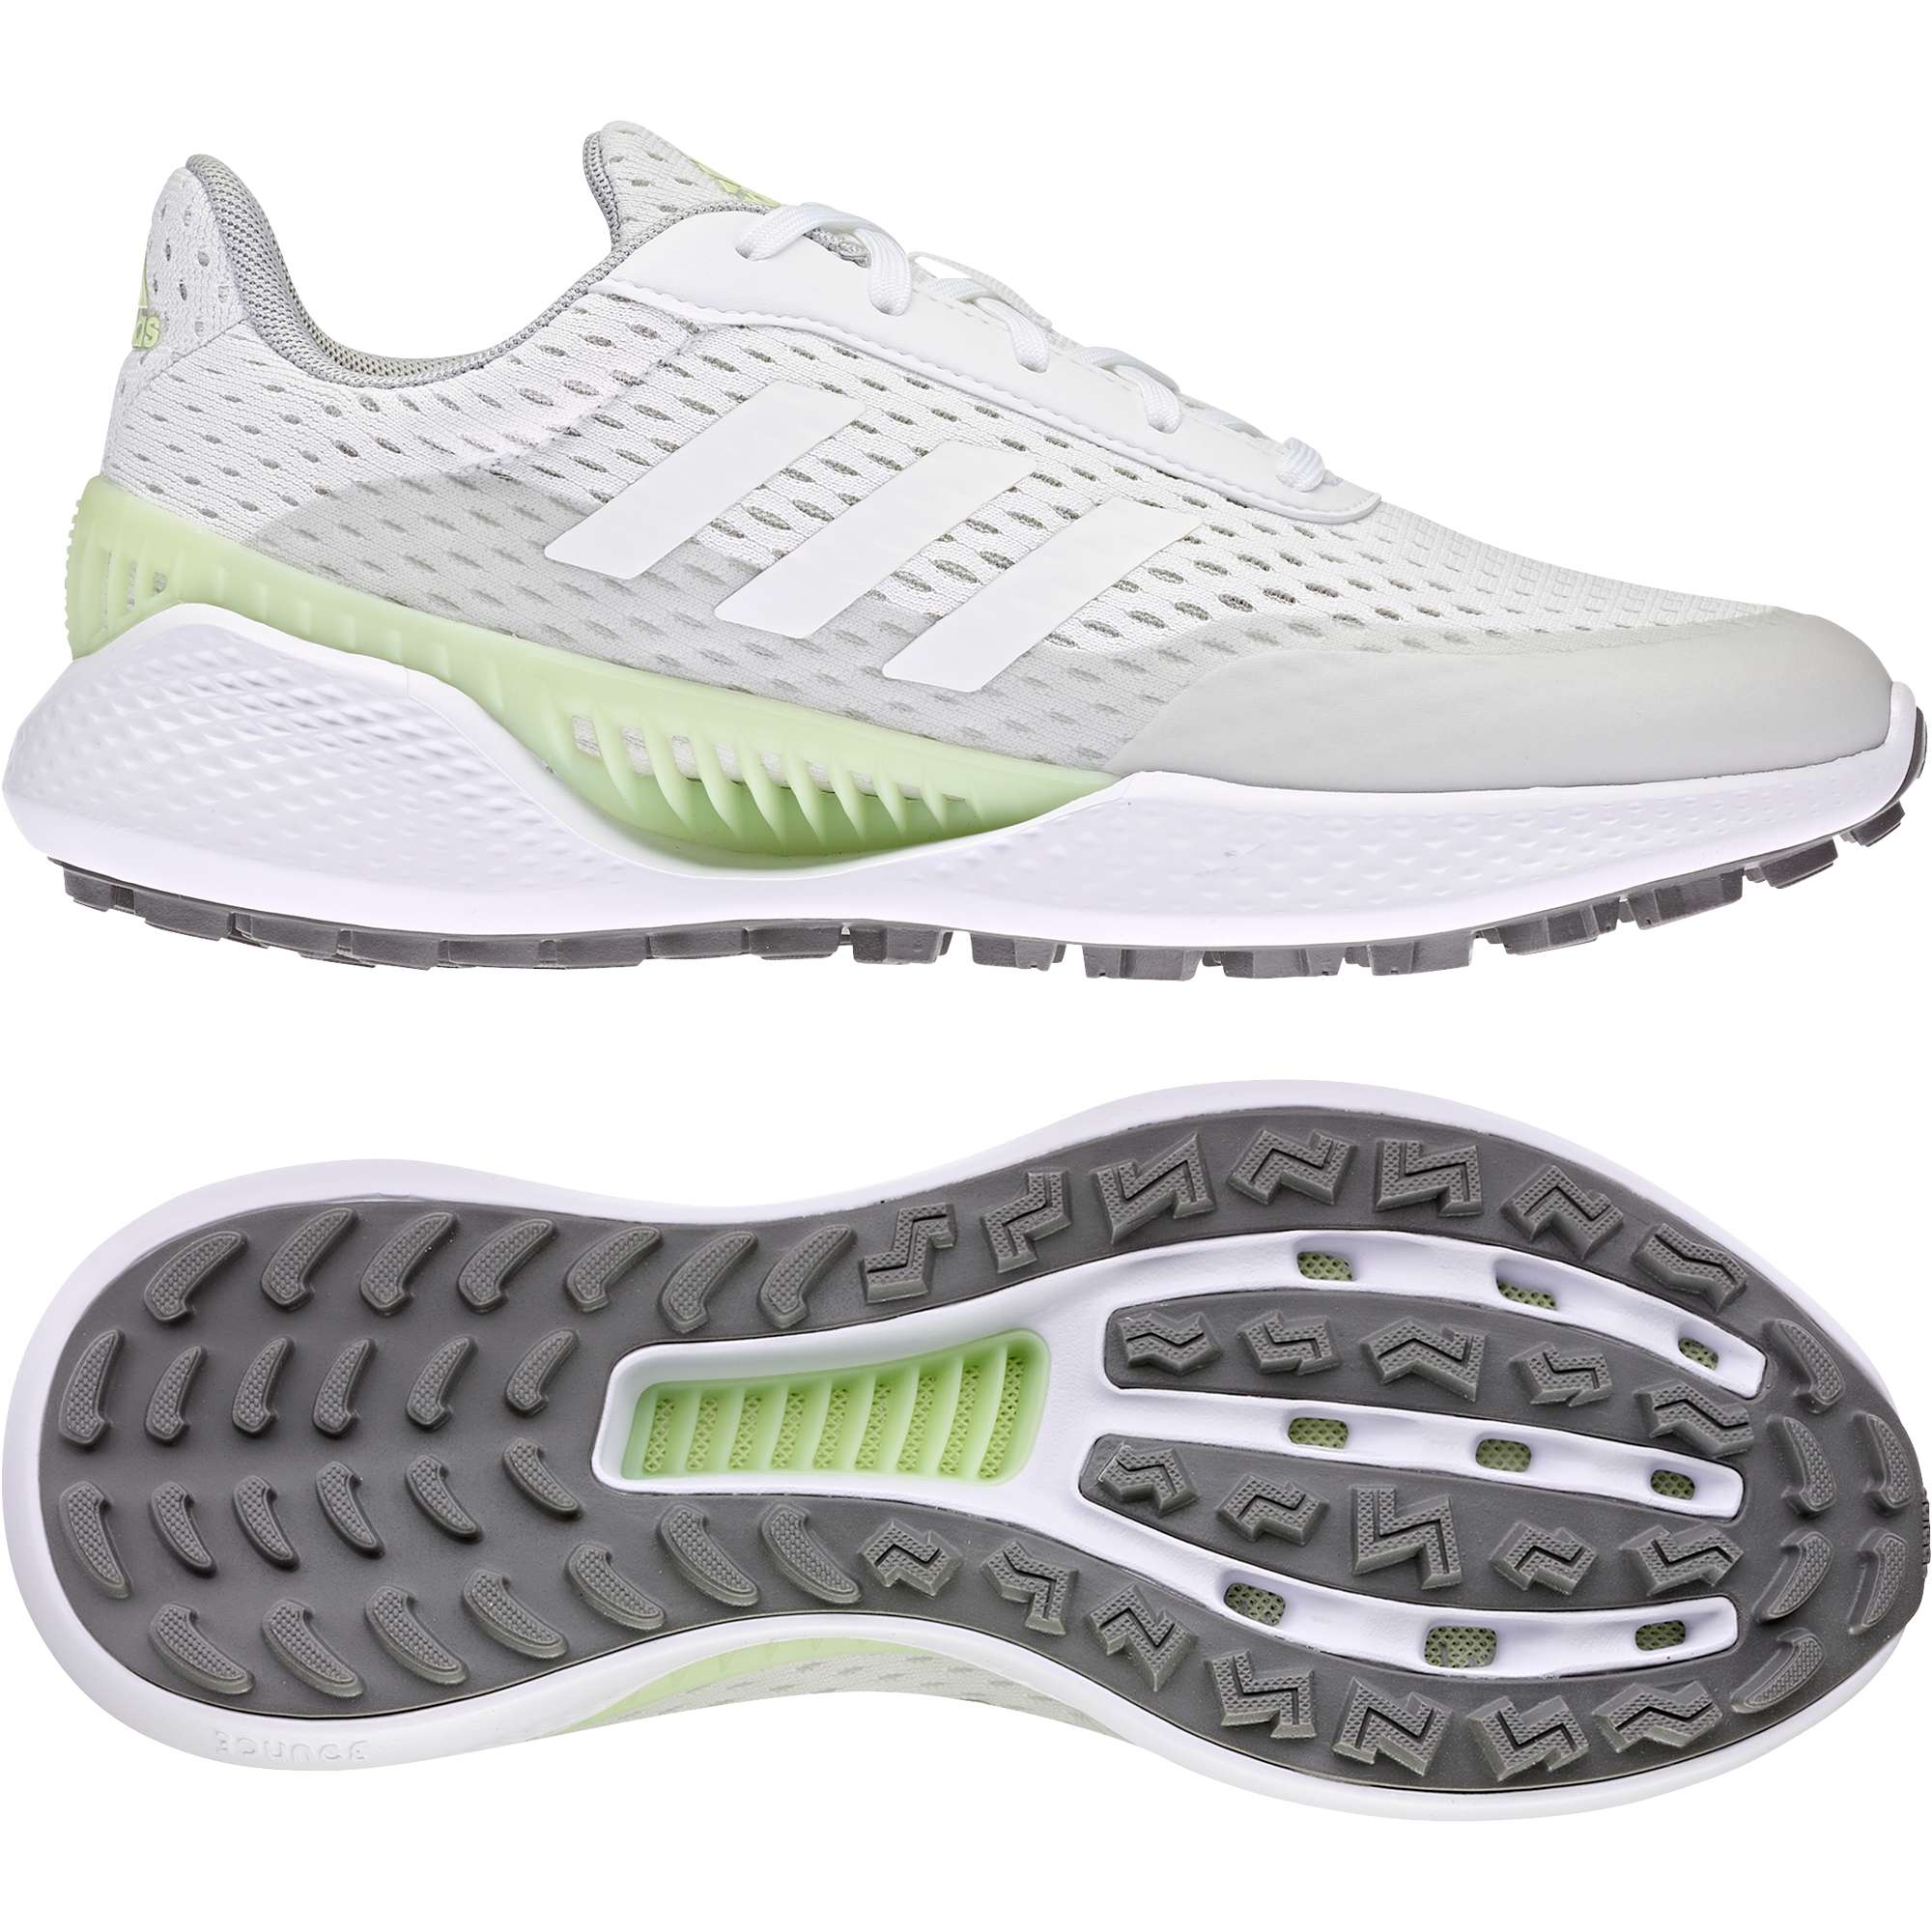 Adidas Summervent Damen Golfschuhe, Weiß / Lime günstig kaufen Golflädchen